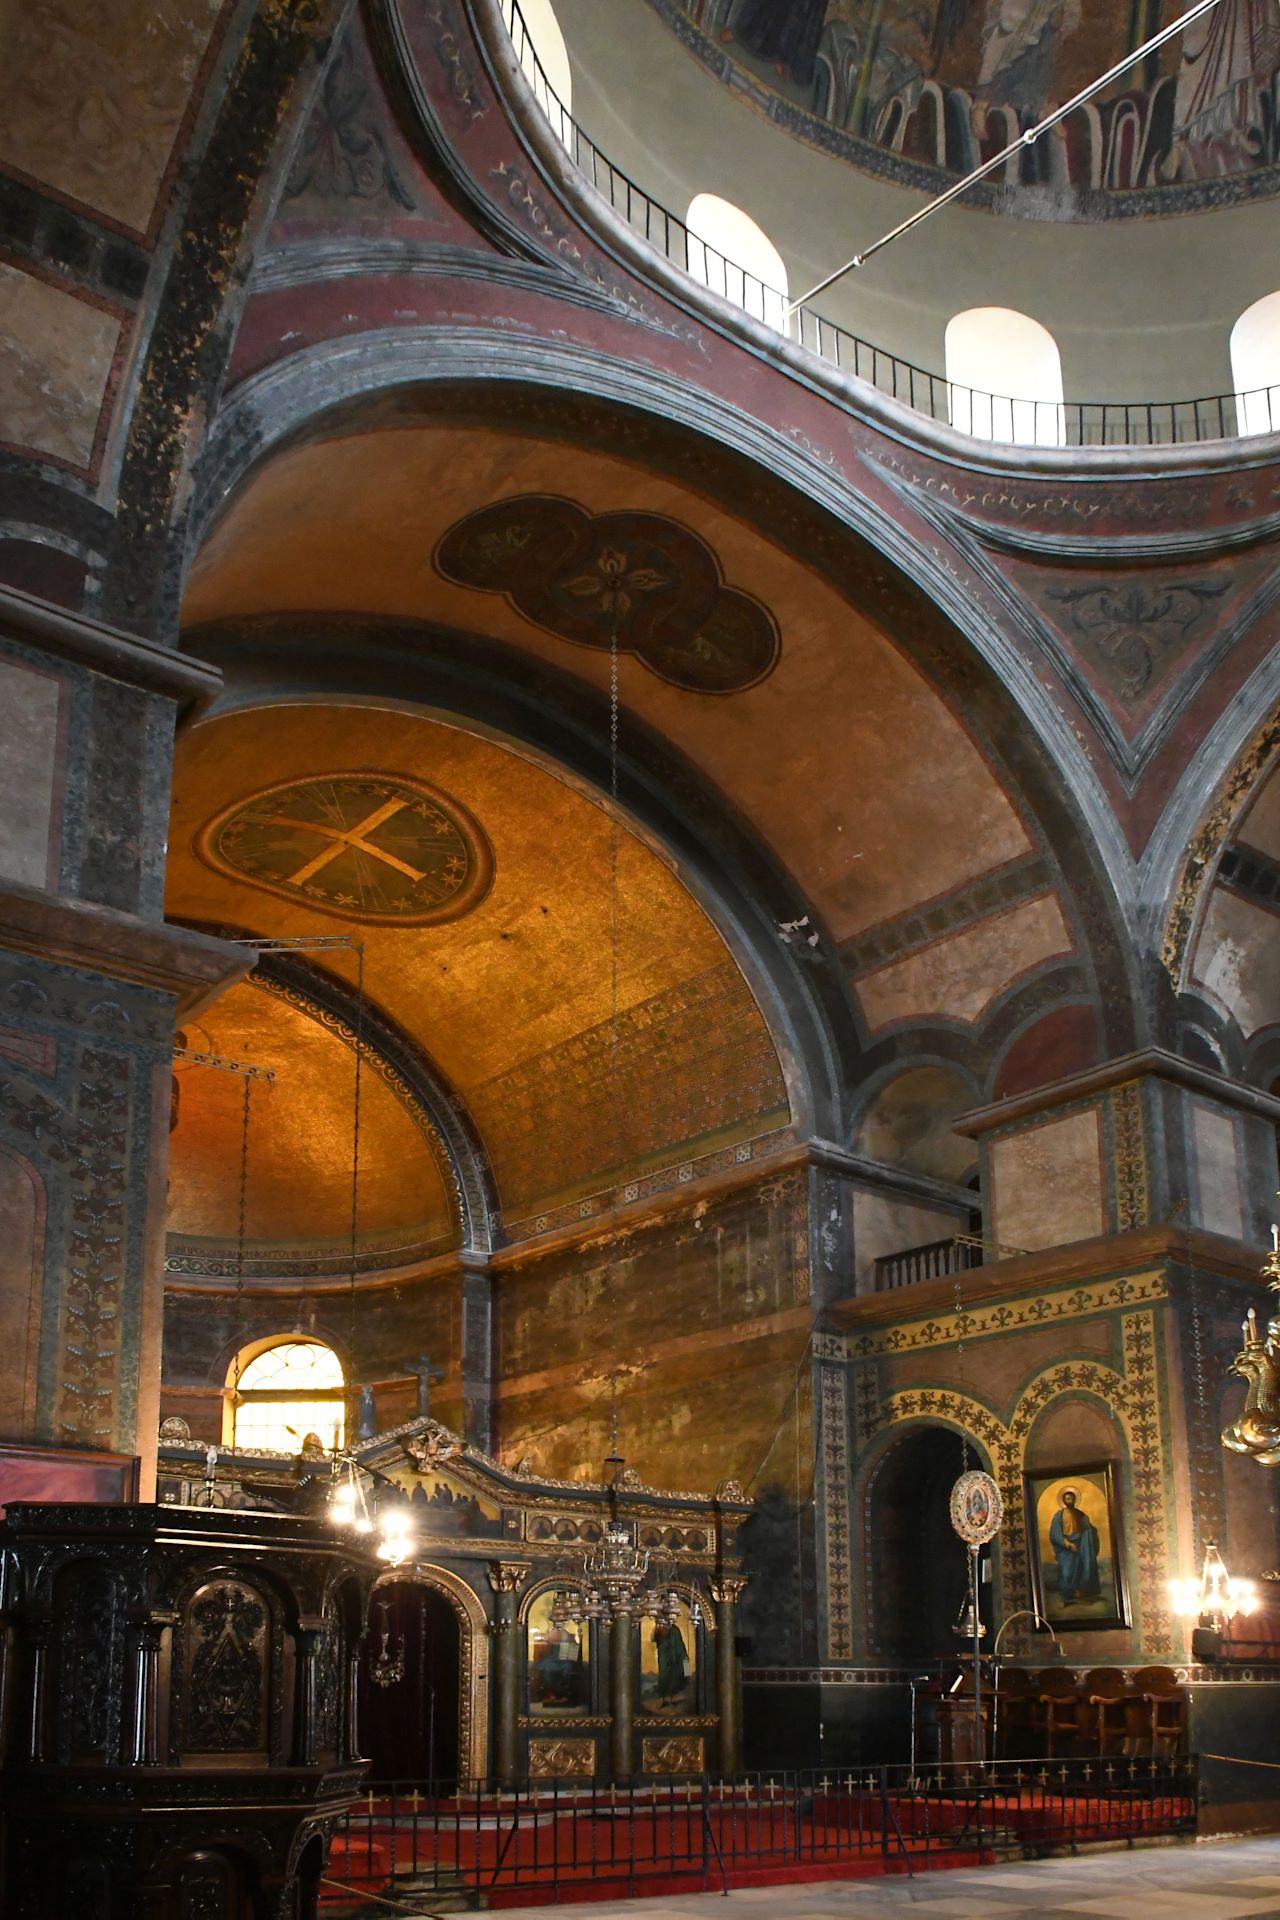 Hagia Sophia (Αγία Σοφία) (7. Jhdt.)